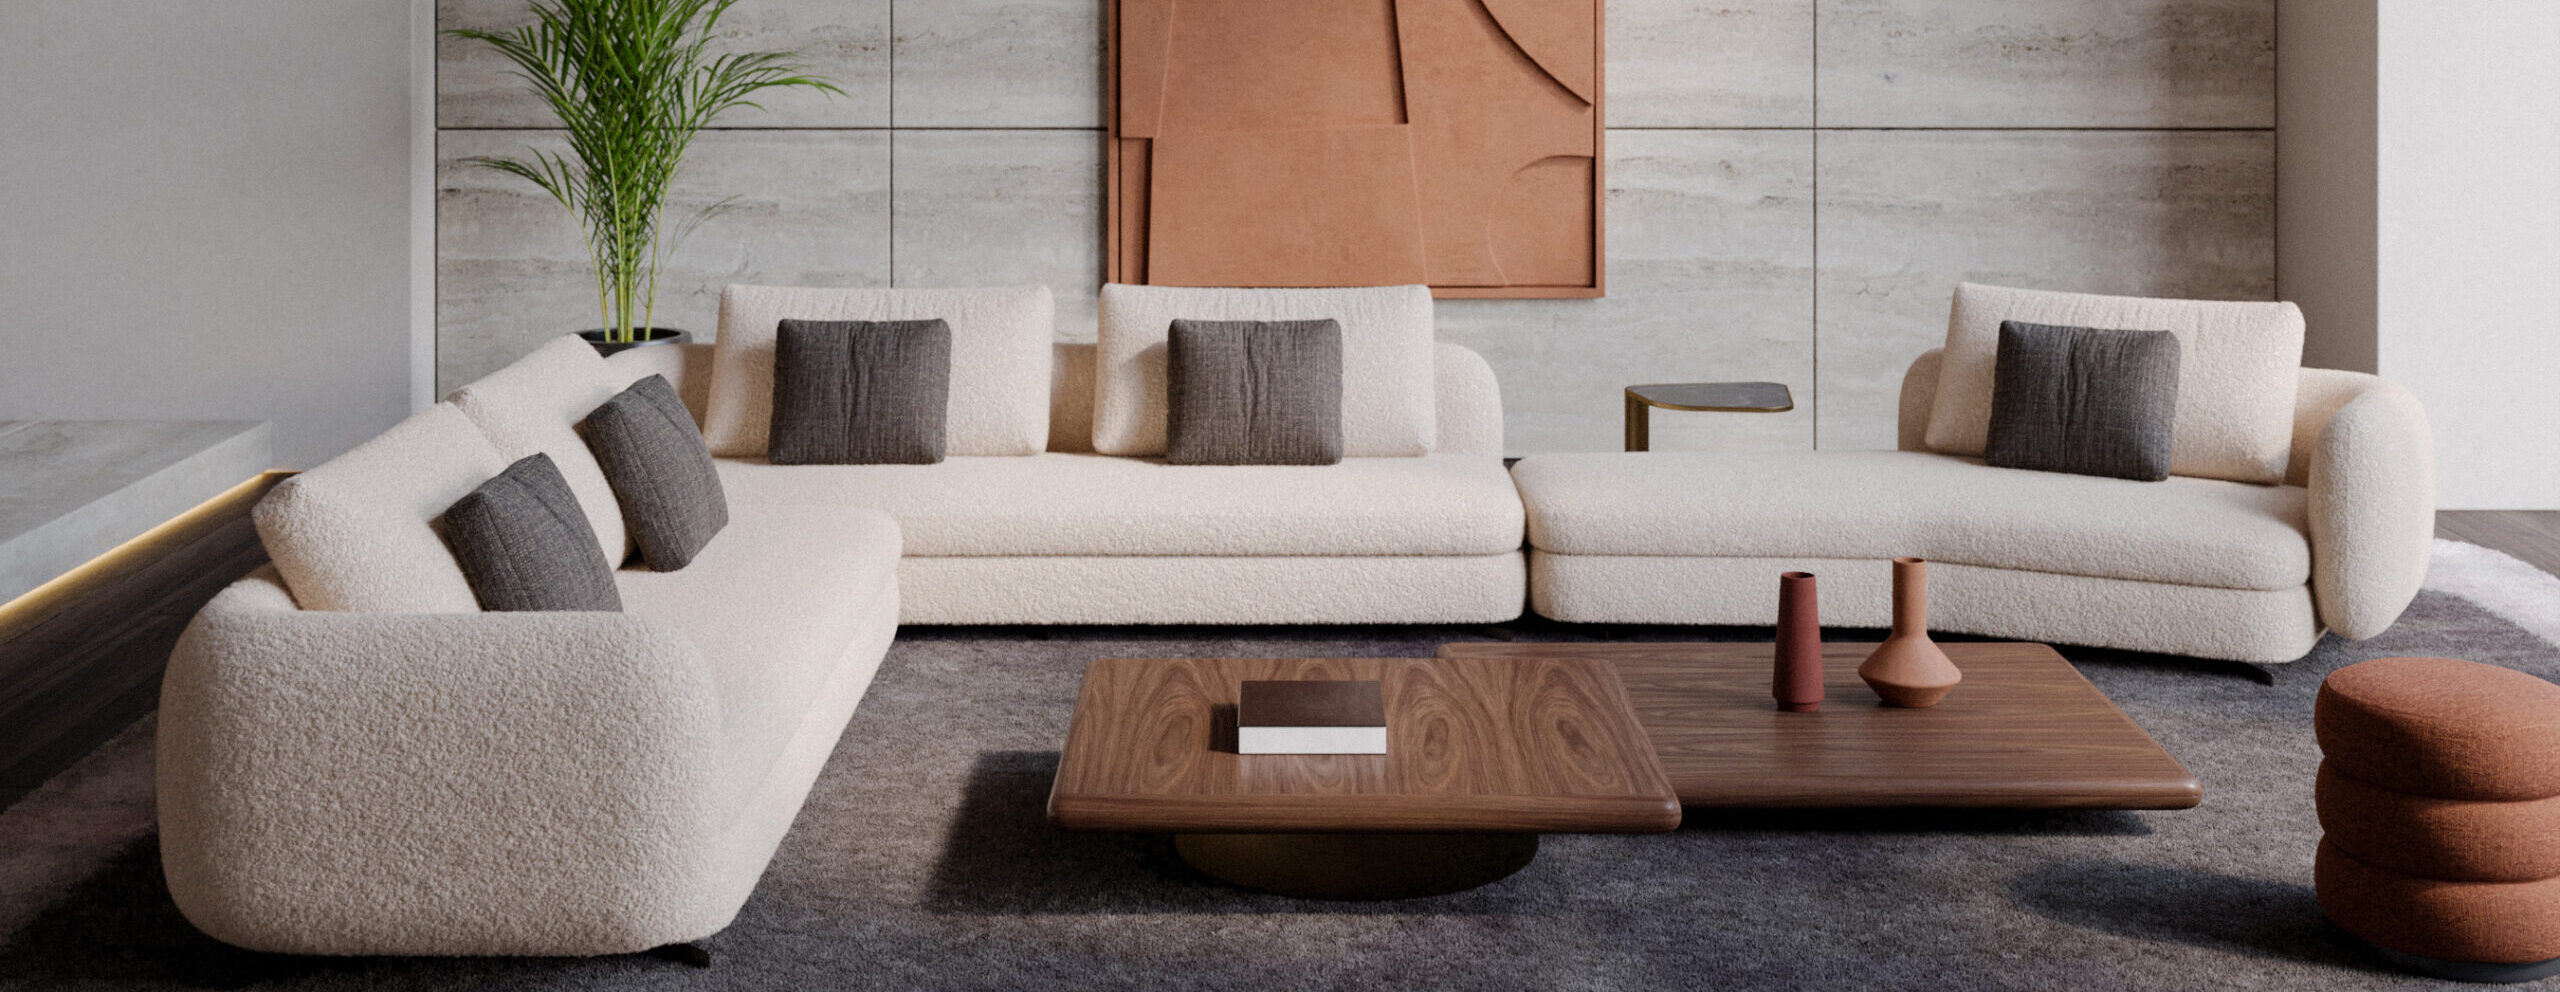 Evolution Design Sofa's-cozy sofa-Beige sofa-Design zitbanken op maat-Interieurwinkel-Hasselt-XL sofa-L hoek sofa